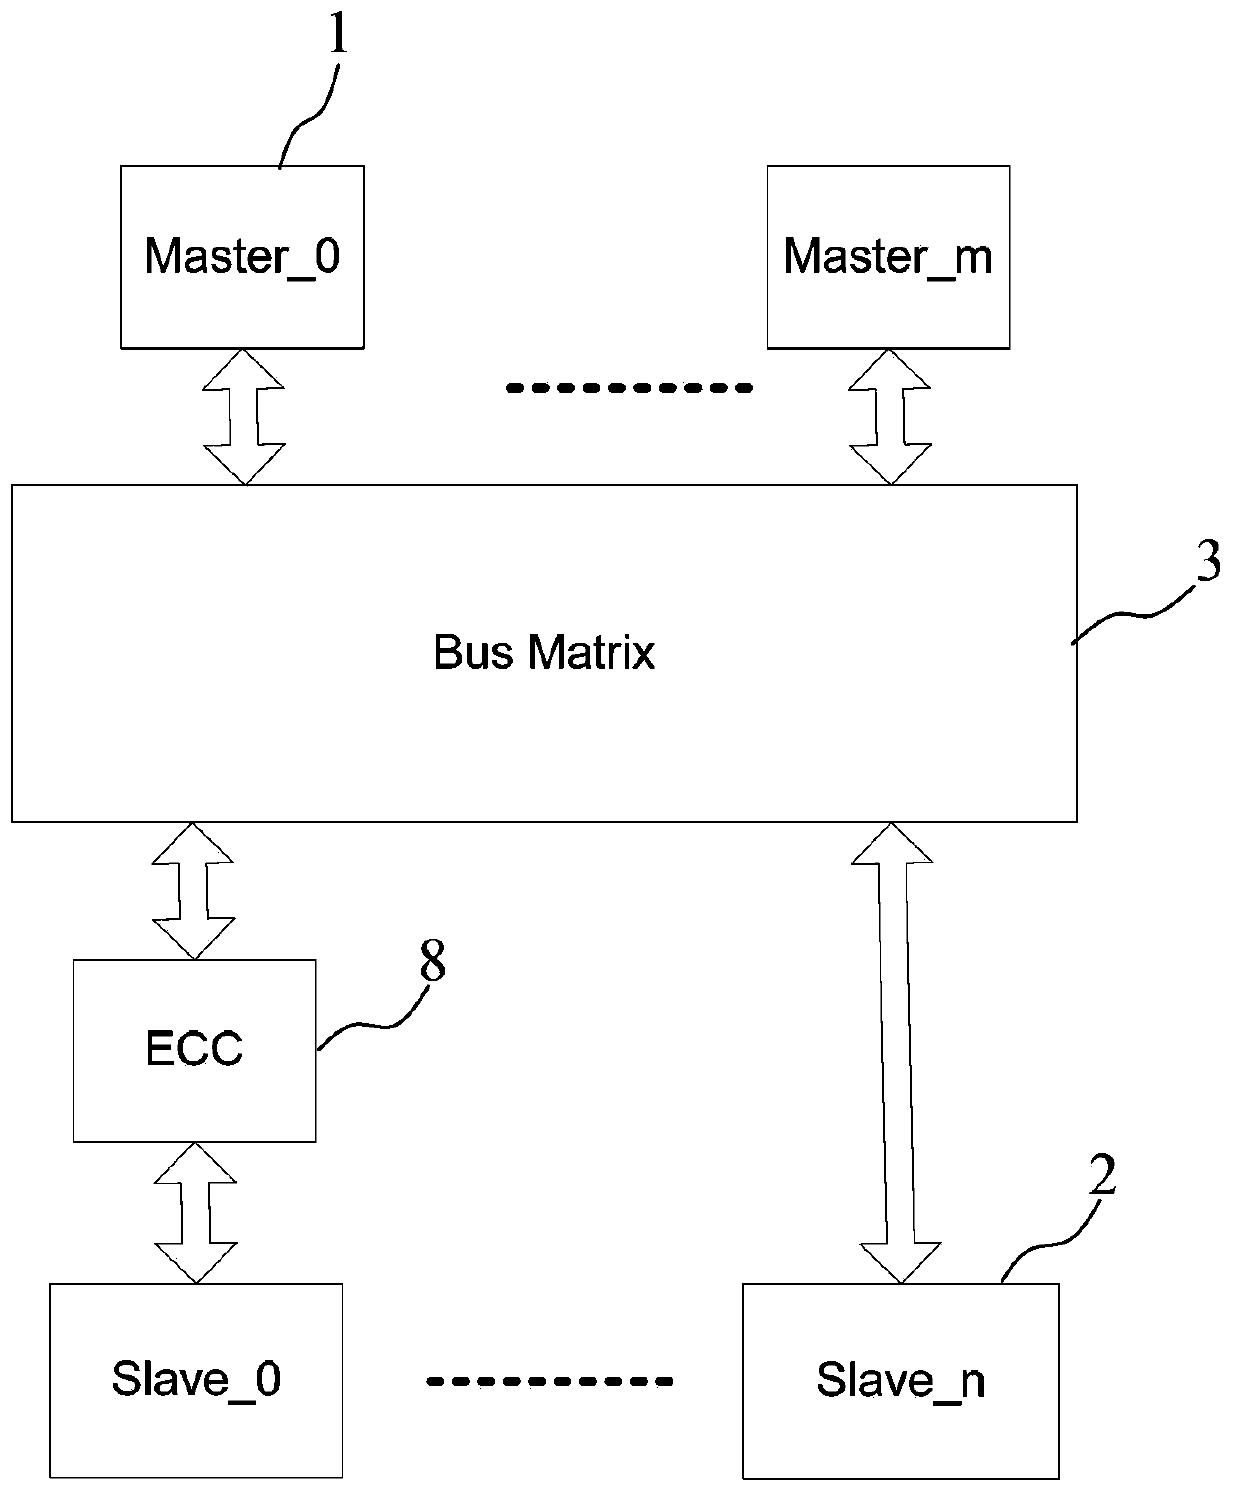 Random access memory access bus ECC (error checking and correcting) verification device